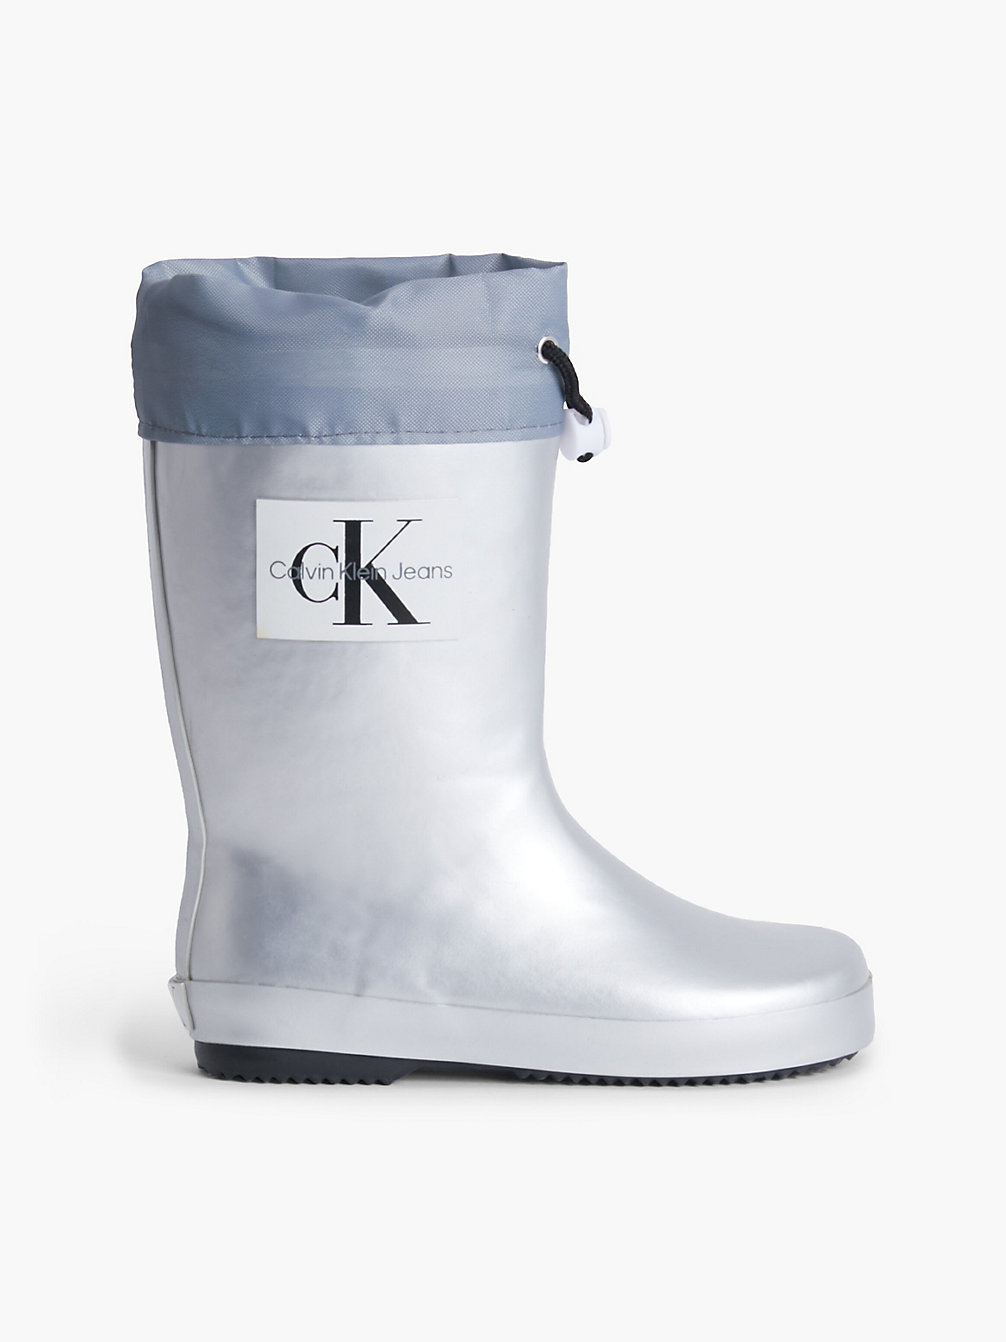 SILVER Kids Rain Boots undefined kids unisex Calvin Klein